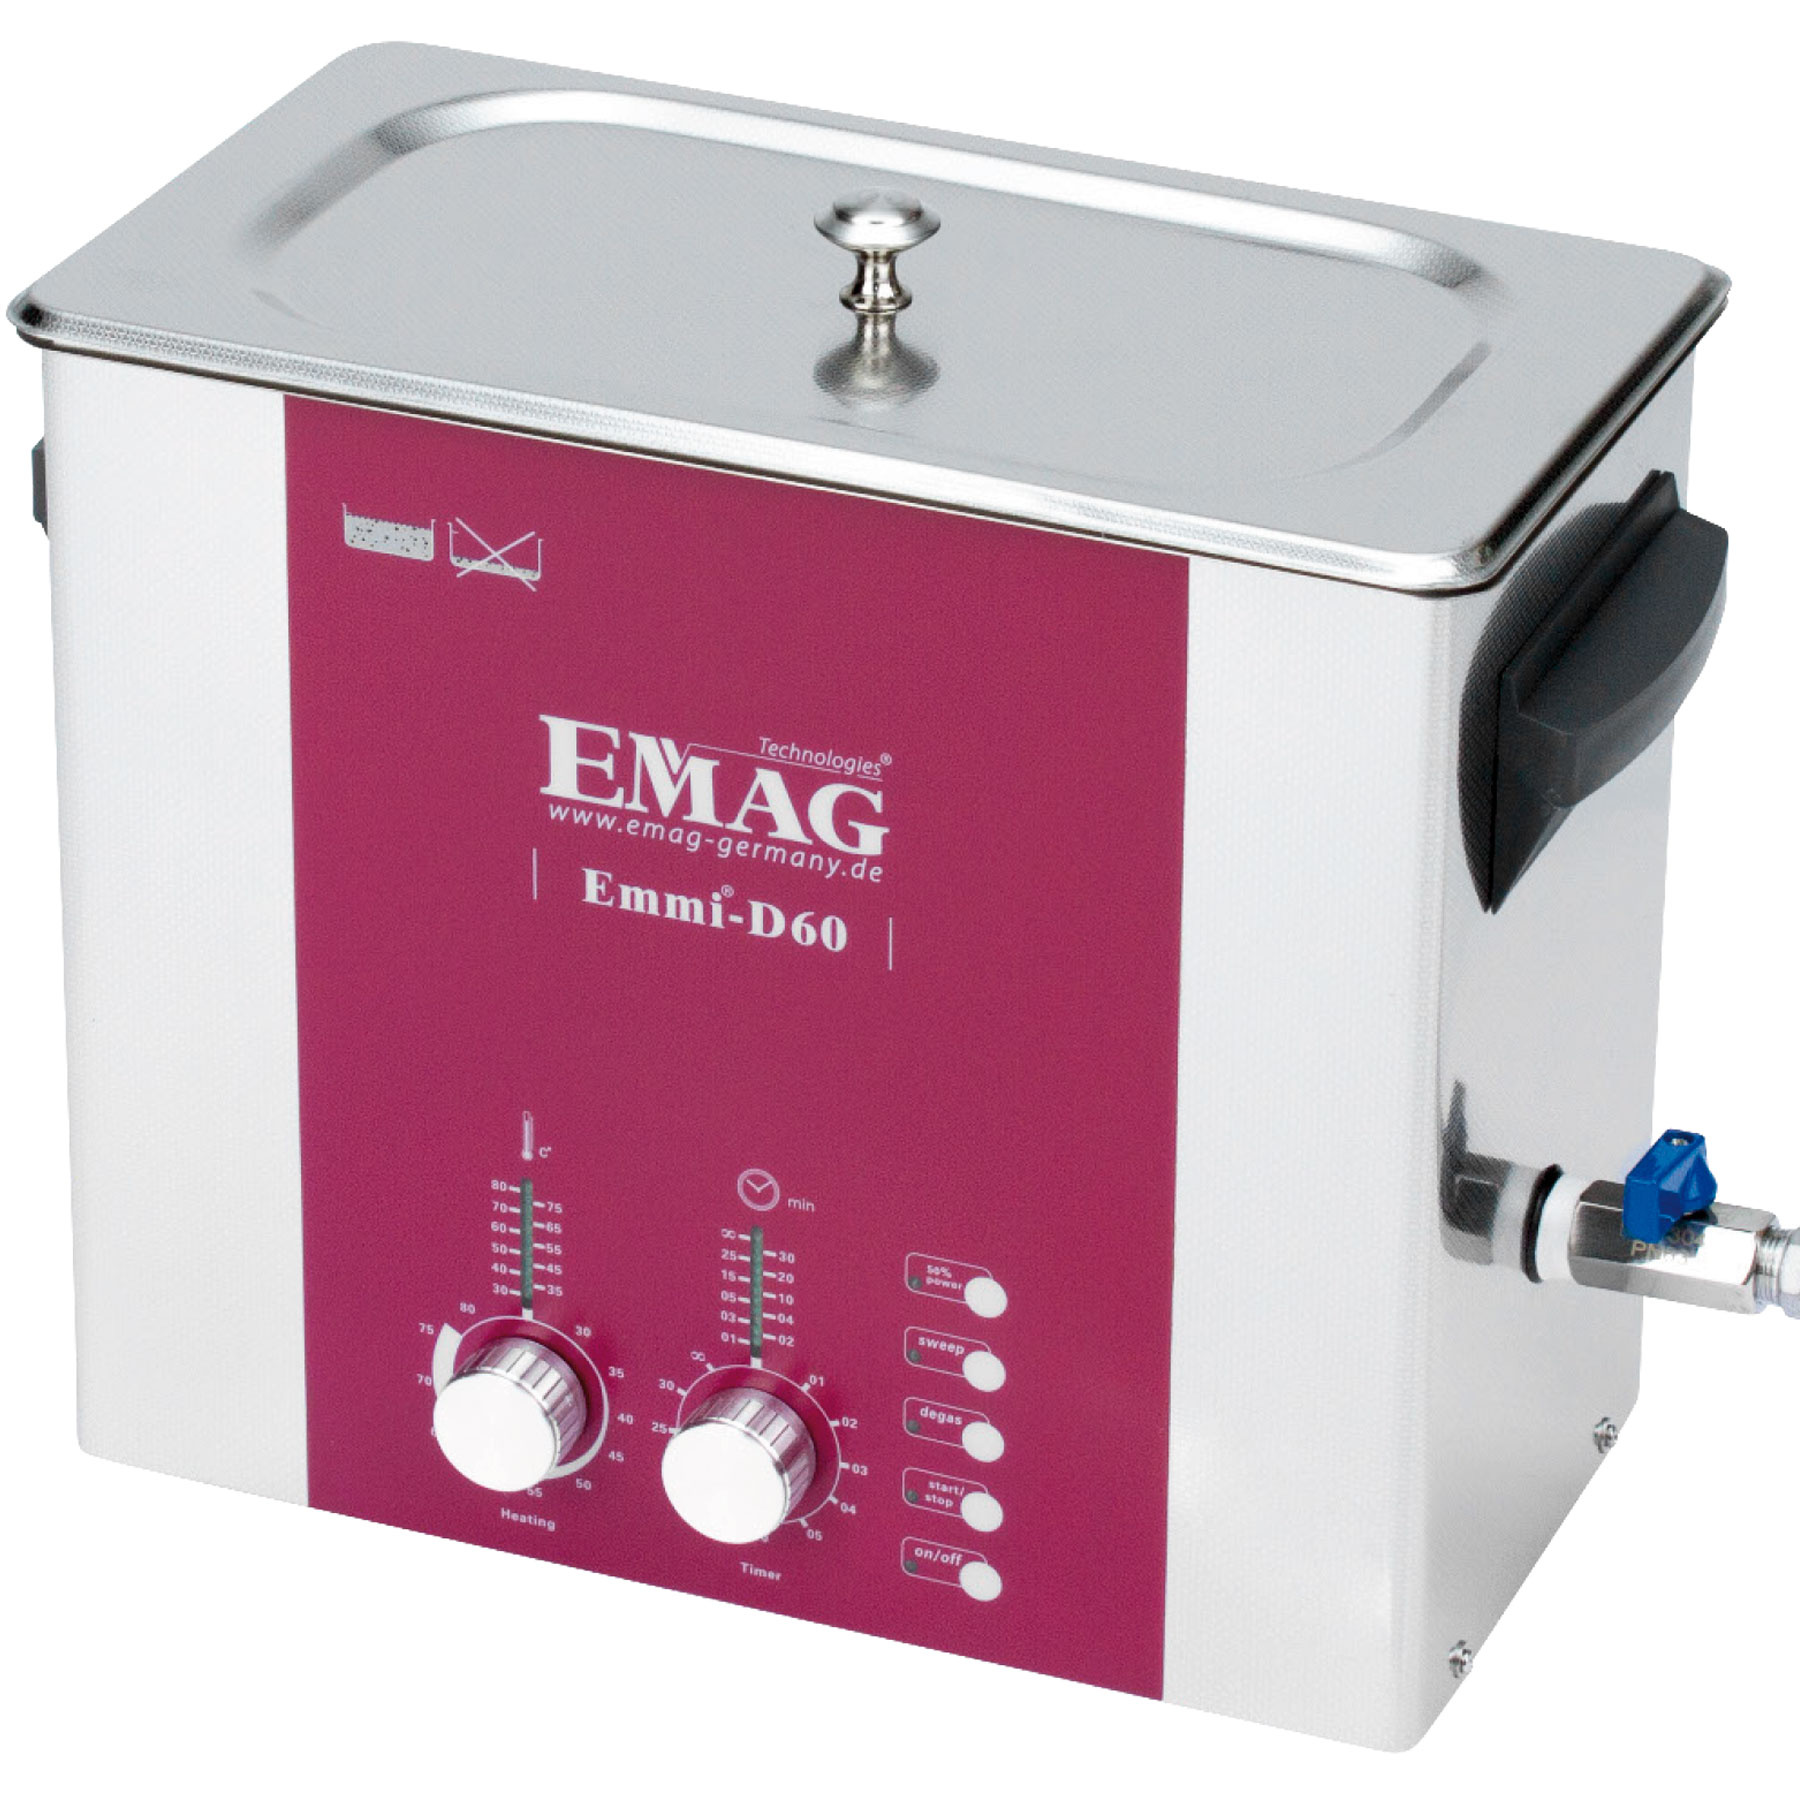 Pulitore ad ultrasuoni EMAG Emmi-D60 con rubinetto di scarico, 544,65€